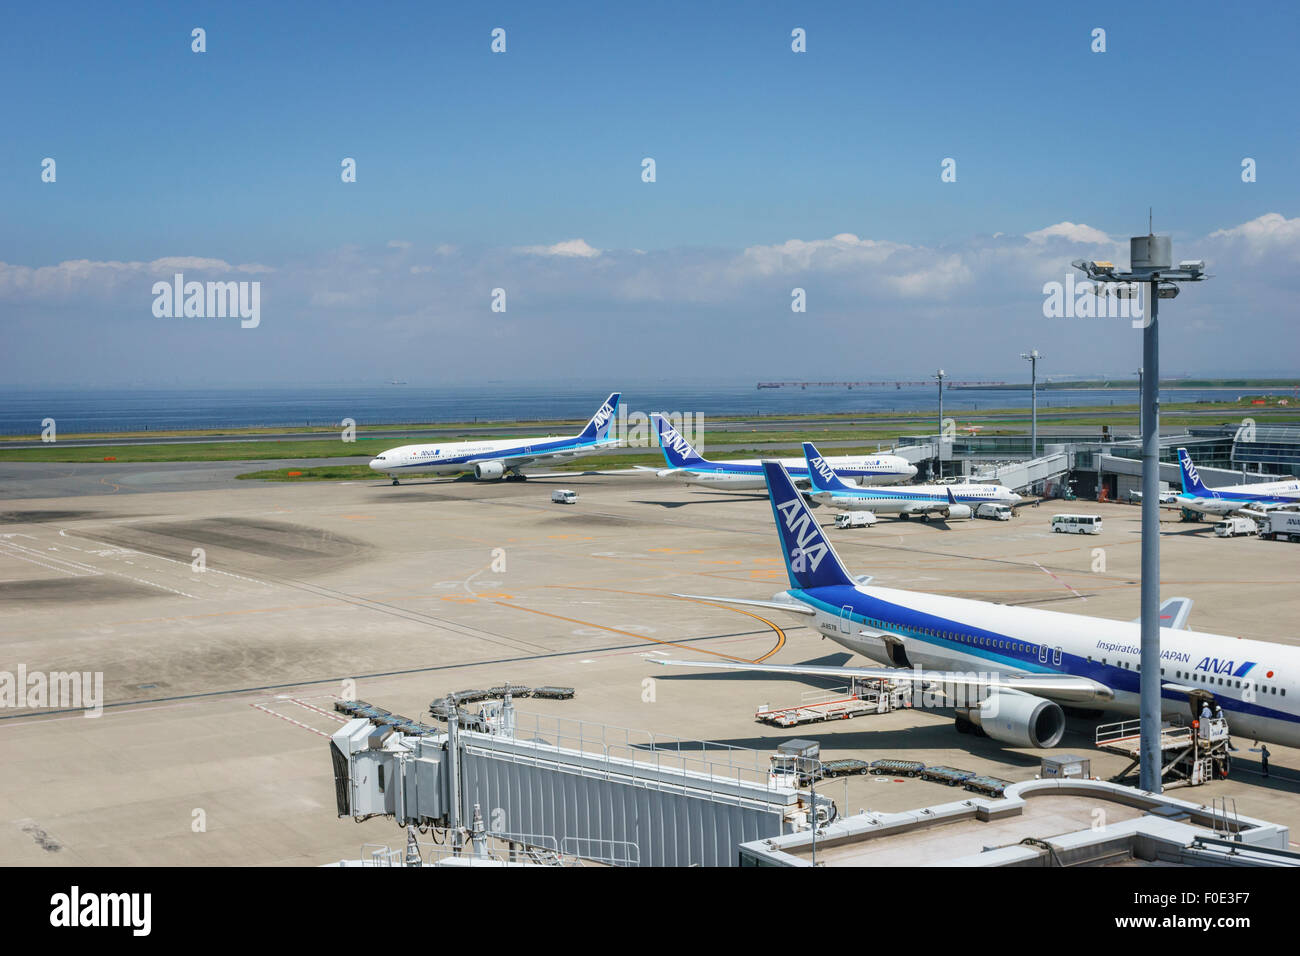 Aerei all'Aeroporto di Haneda in Giappone Foto Stock